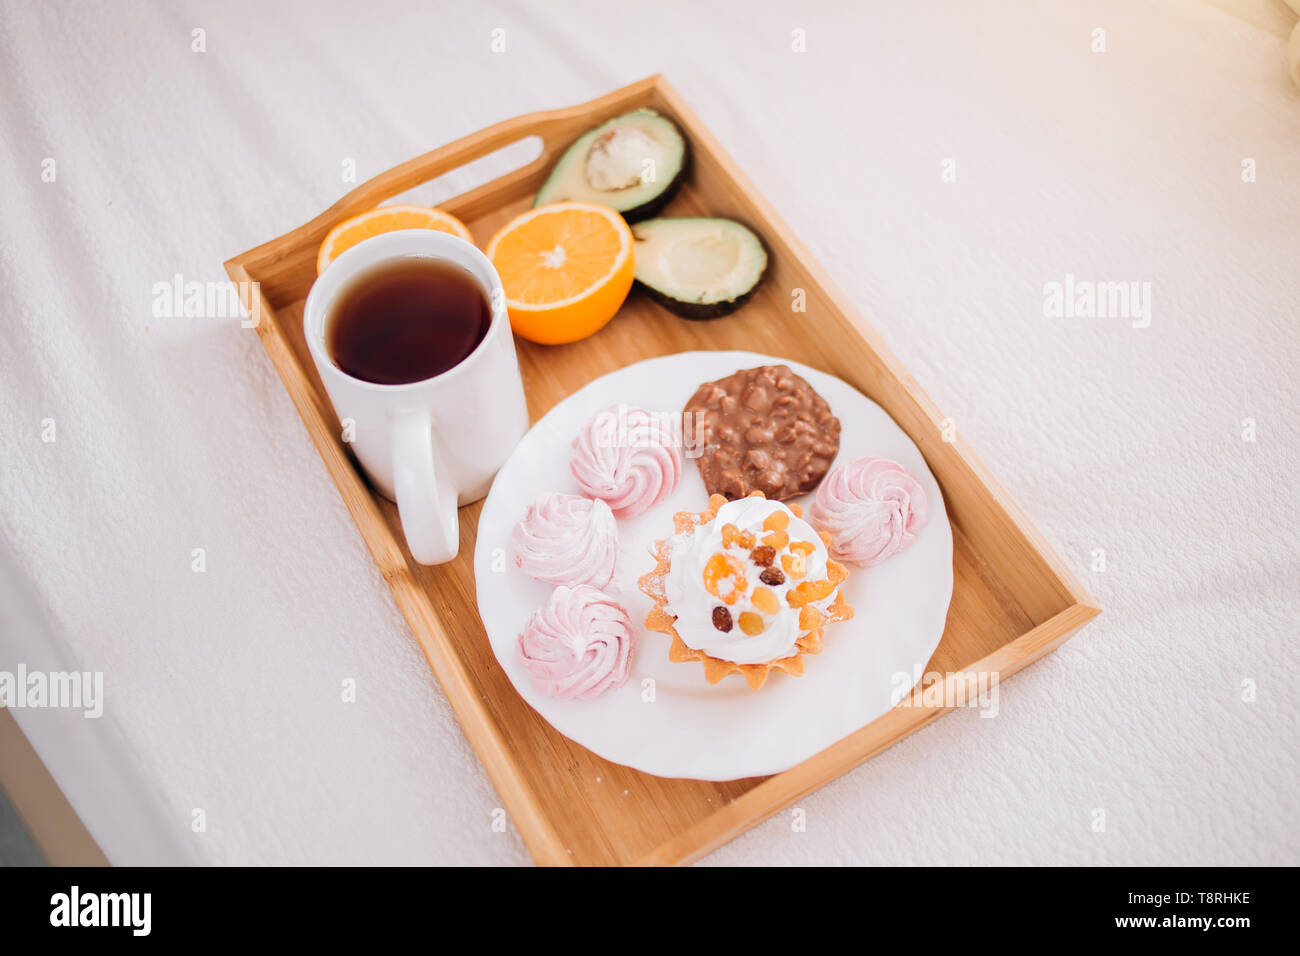 Bon matin petit déjeuner au lit avec un plateau, orange, l'avocat, gâteau, guimauves, biscuits au chocolat en barre en bois de vie, nourriture, repas, un confort d'accueil Banque D'Images